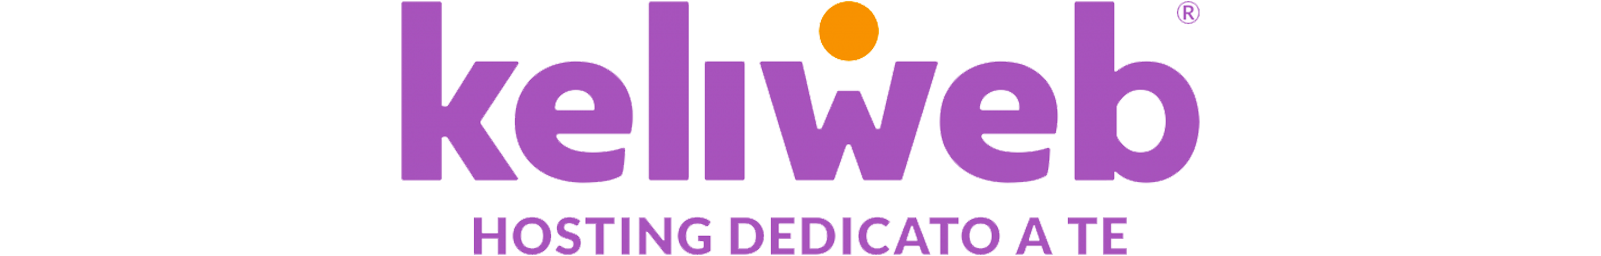 Keliweb Logo